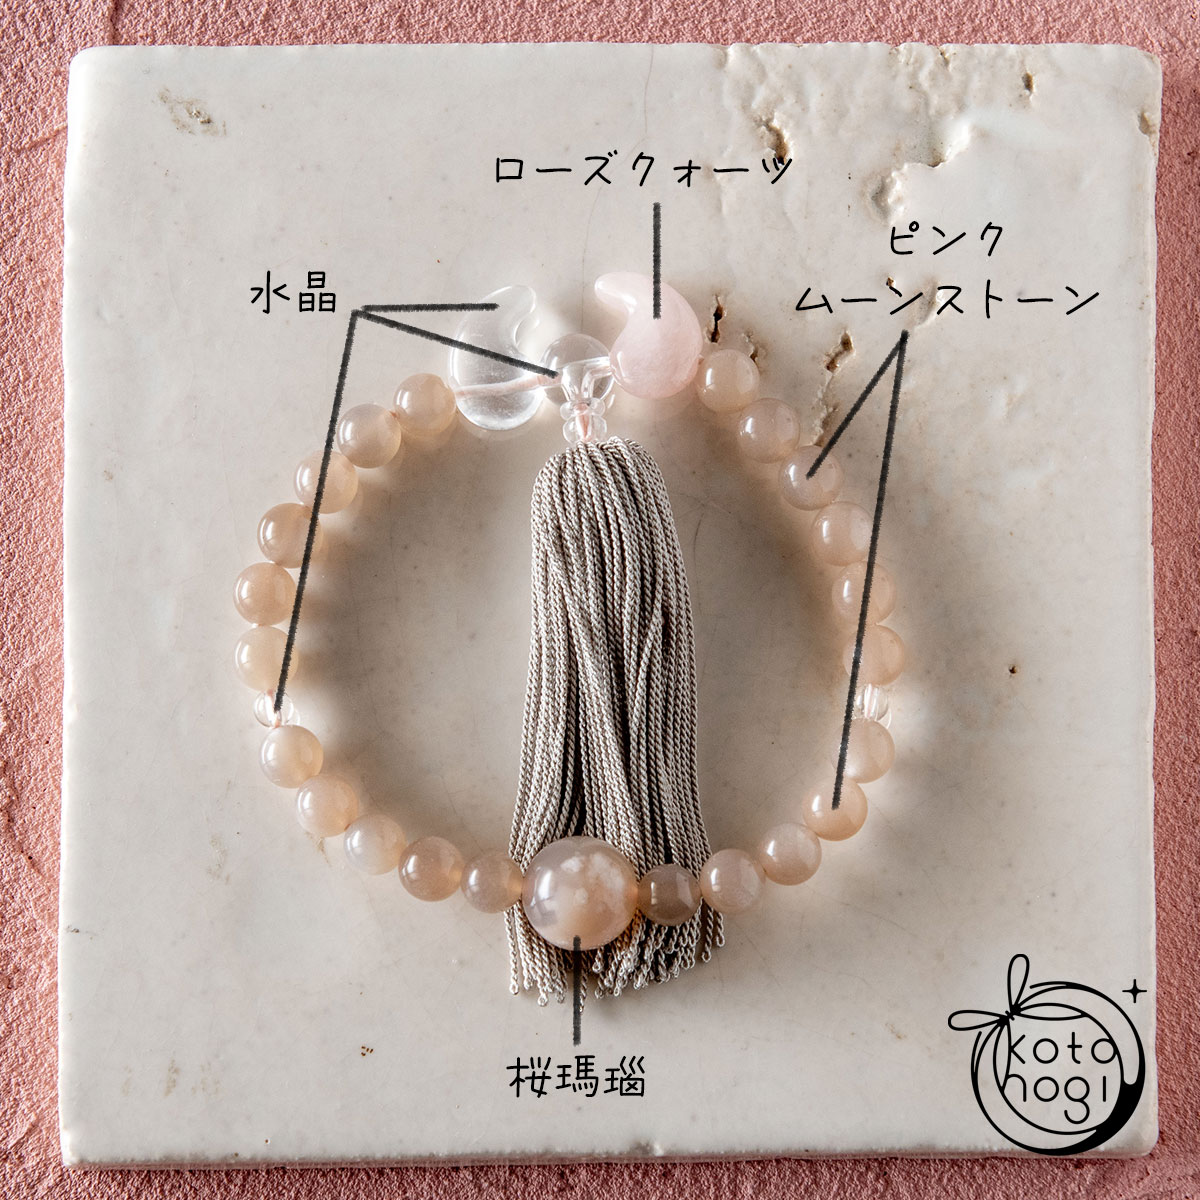 恋愛成就のお守り数珠「ひとえ」 天然石 桜瑪瑙 ピンクムーンストーン ローズクォーツ 水晶 略式念珠の画像